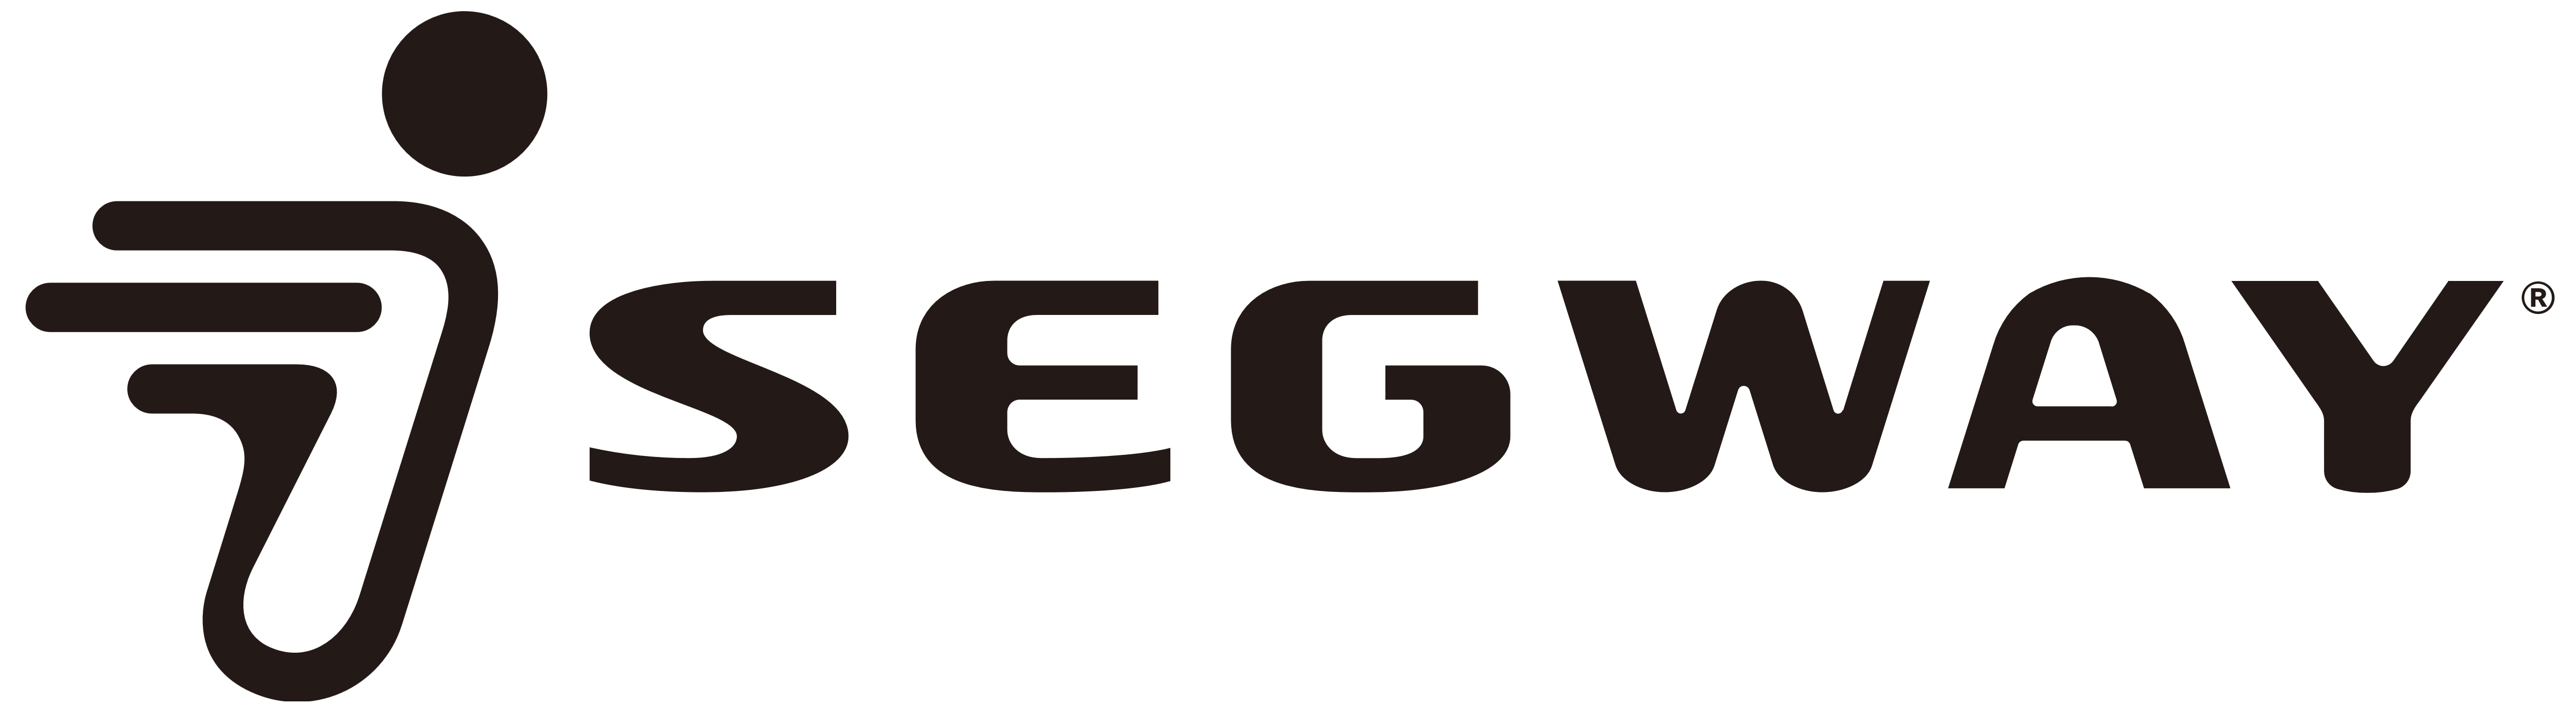 Segway Logo Logotype